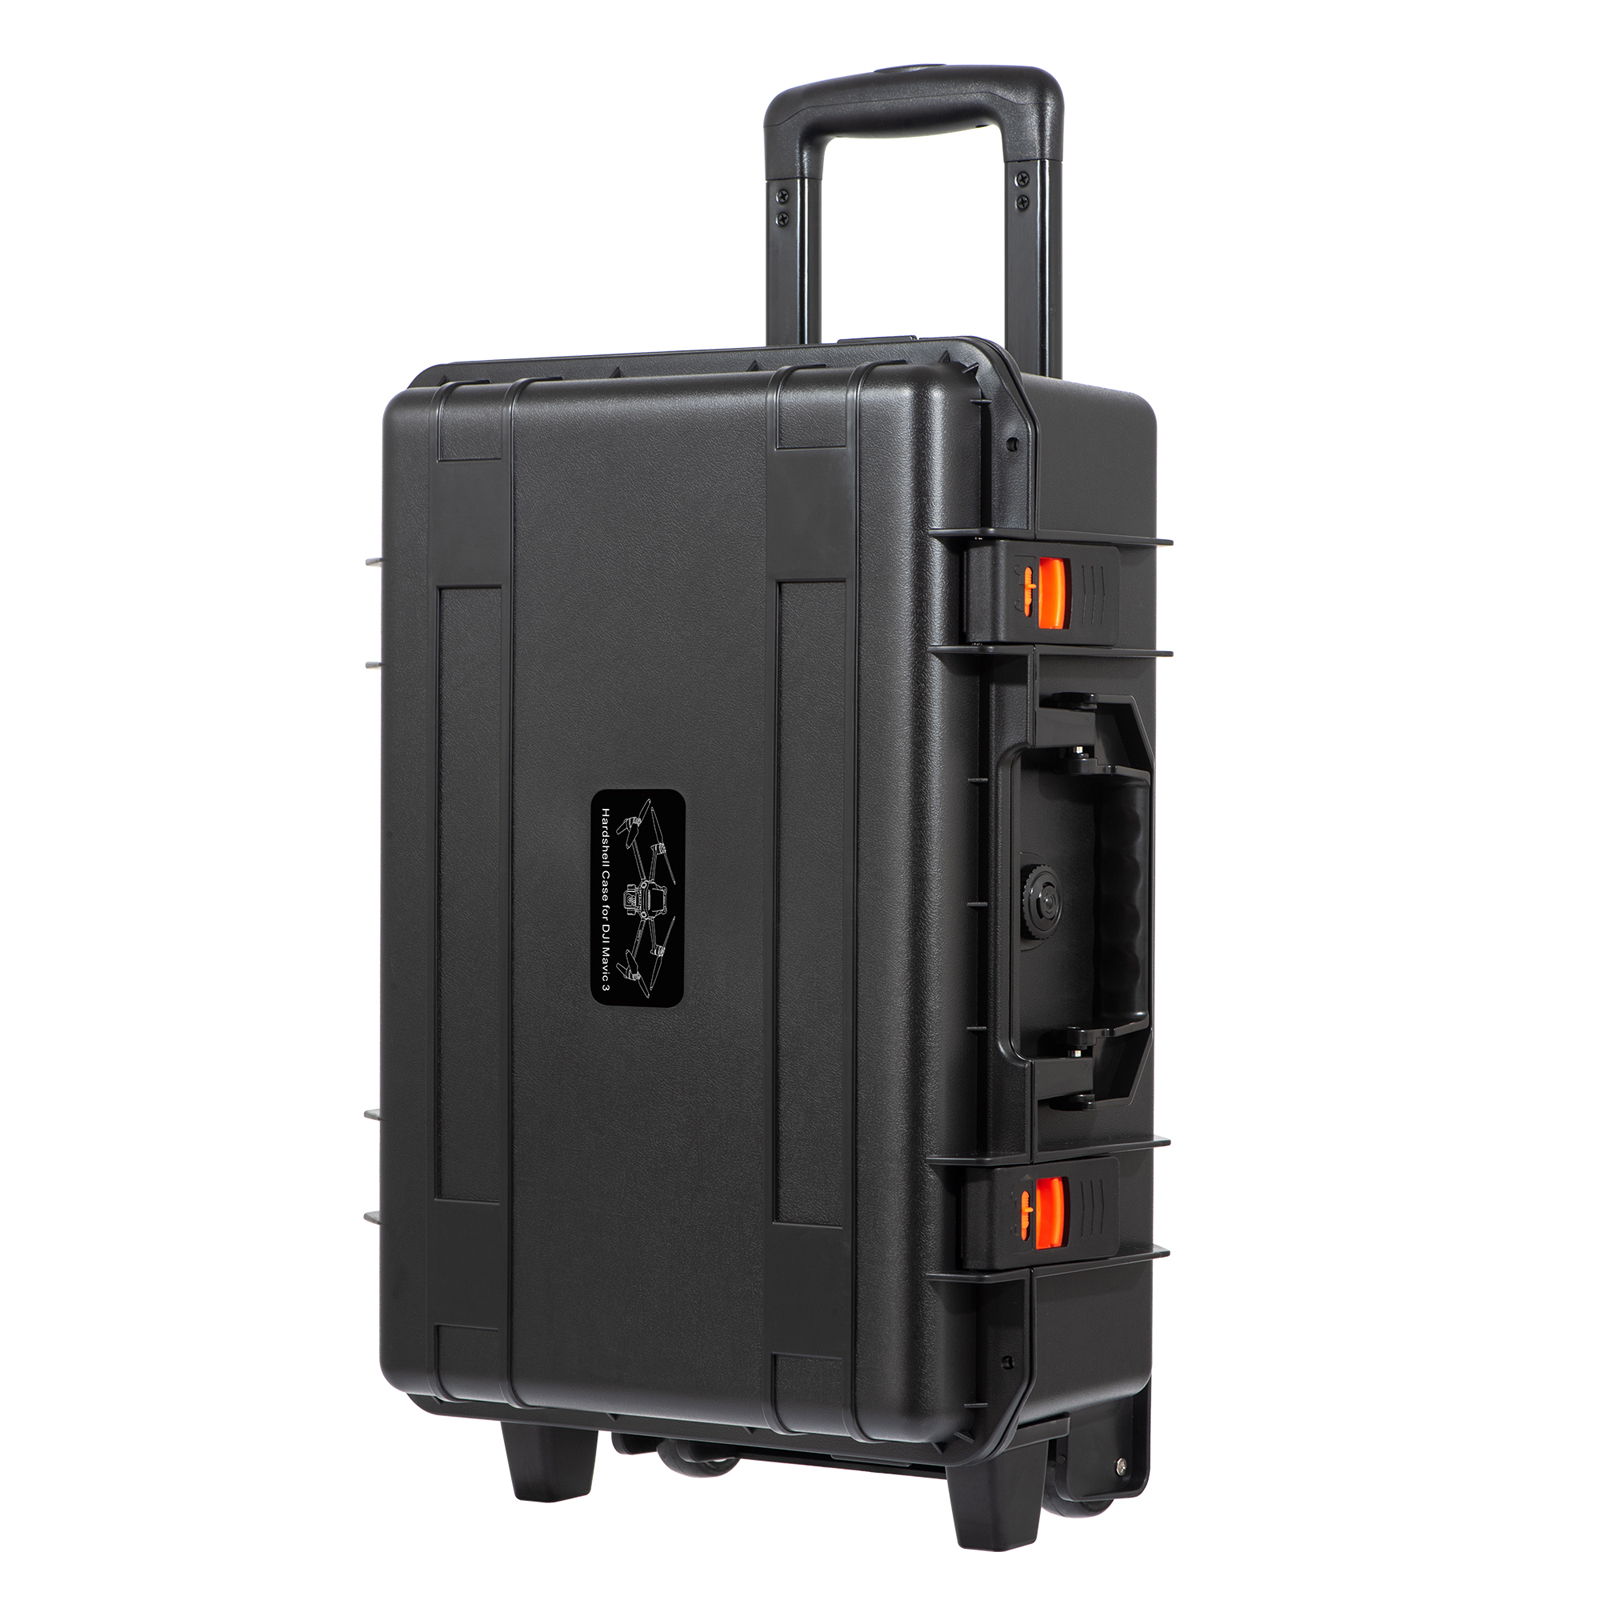 ハードキャリングケース DJI Mavic 3 / Mavic 3 Classic スーツケース 密閉型収納ボックス トロリーケースと互換性あり